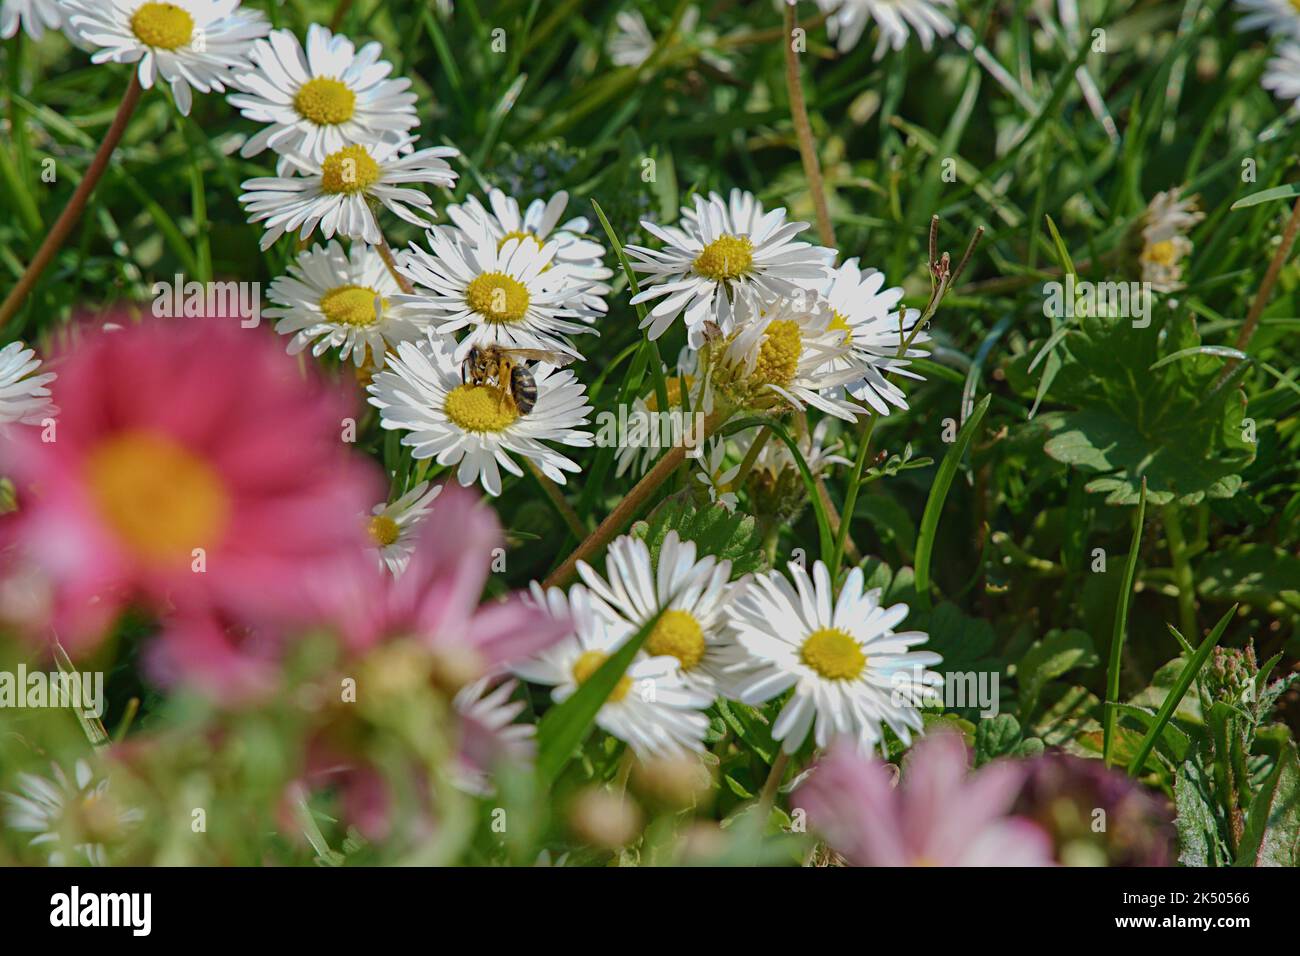 Biene im Rasen mit Gänseblümchen Stock Photo